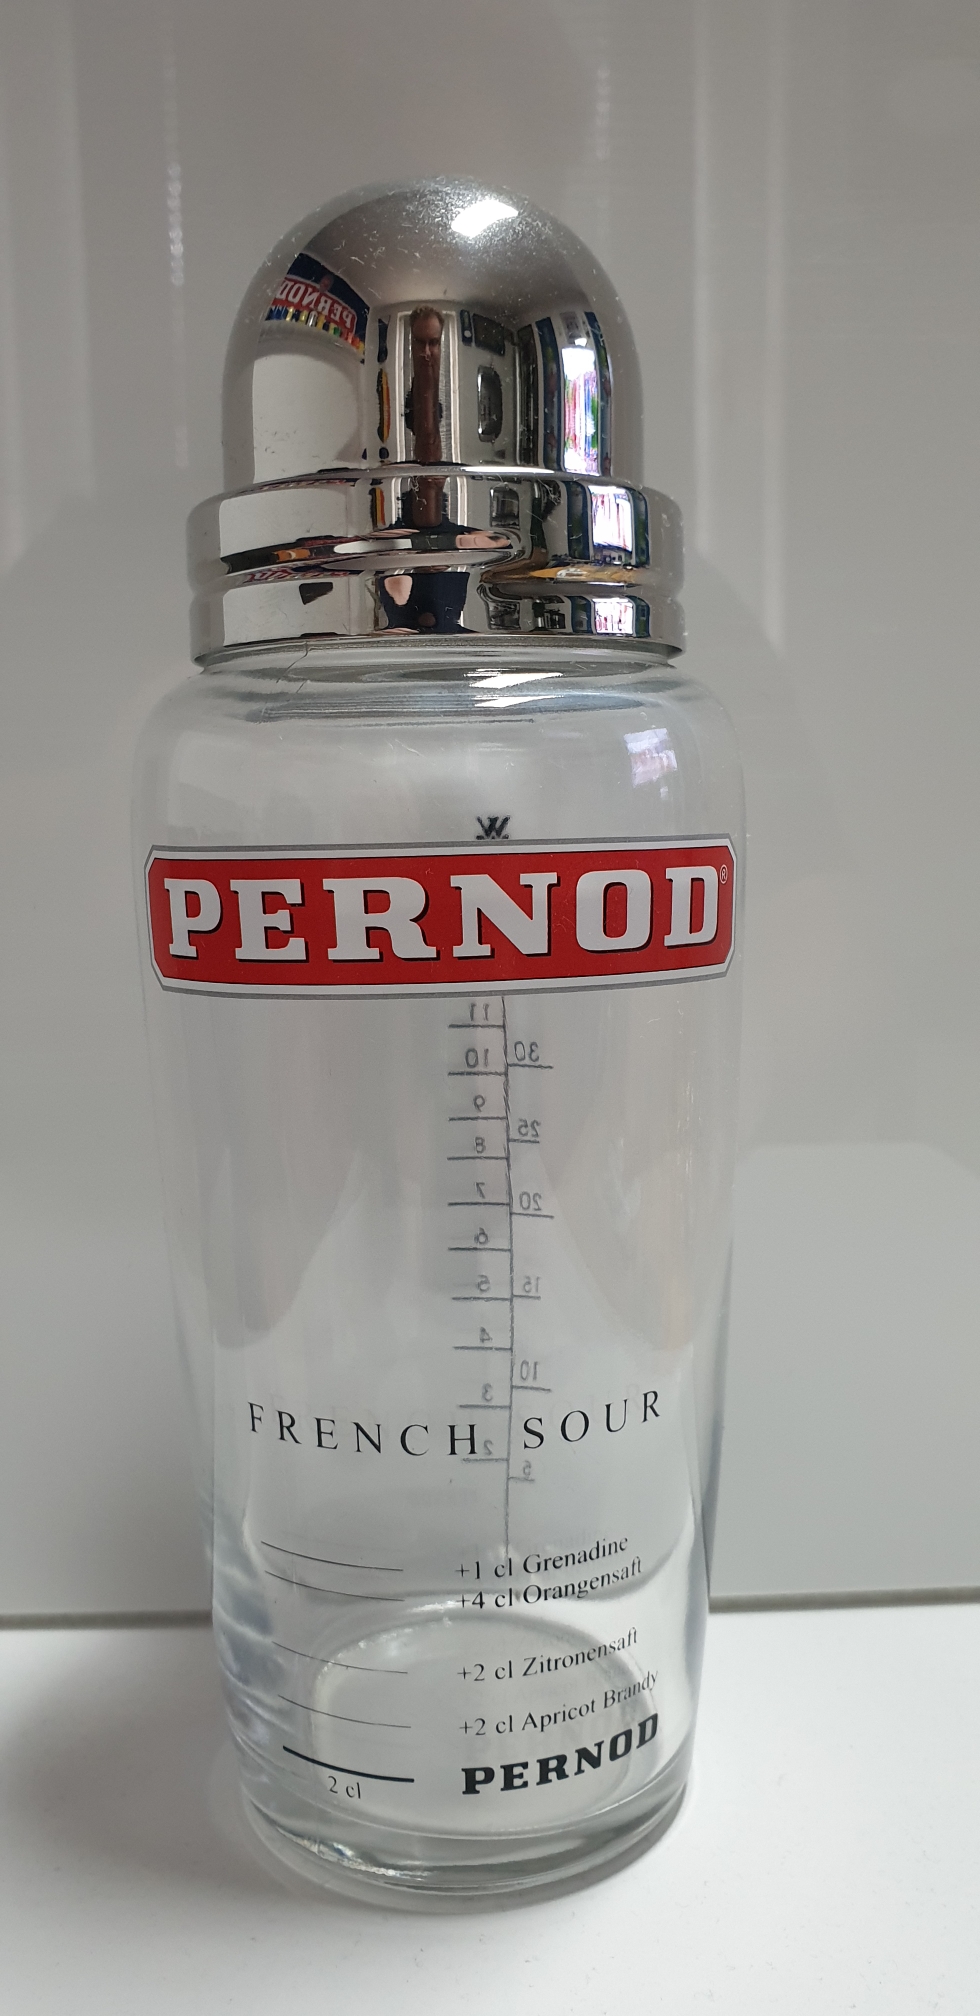 Pernod Shaker